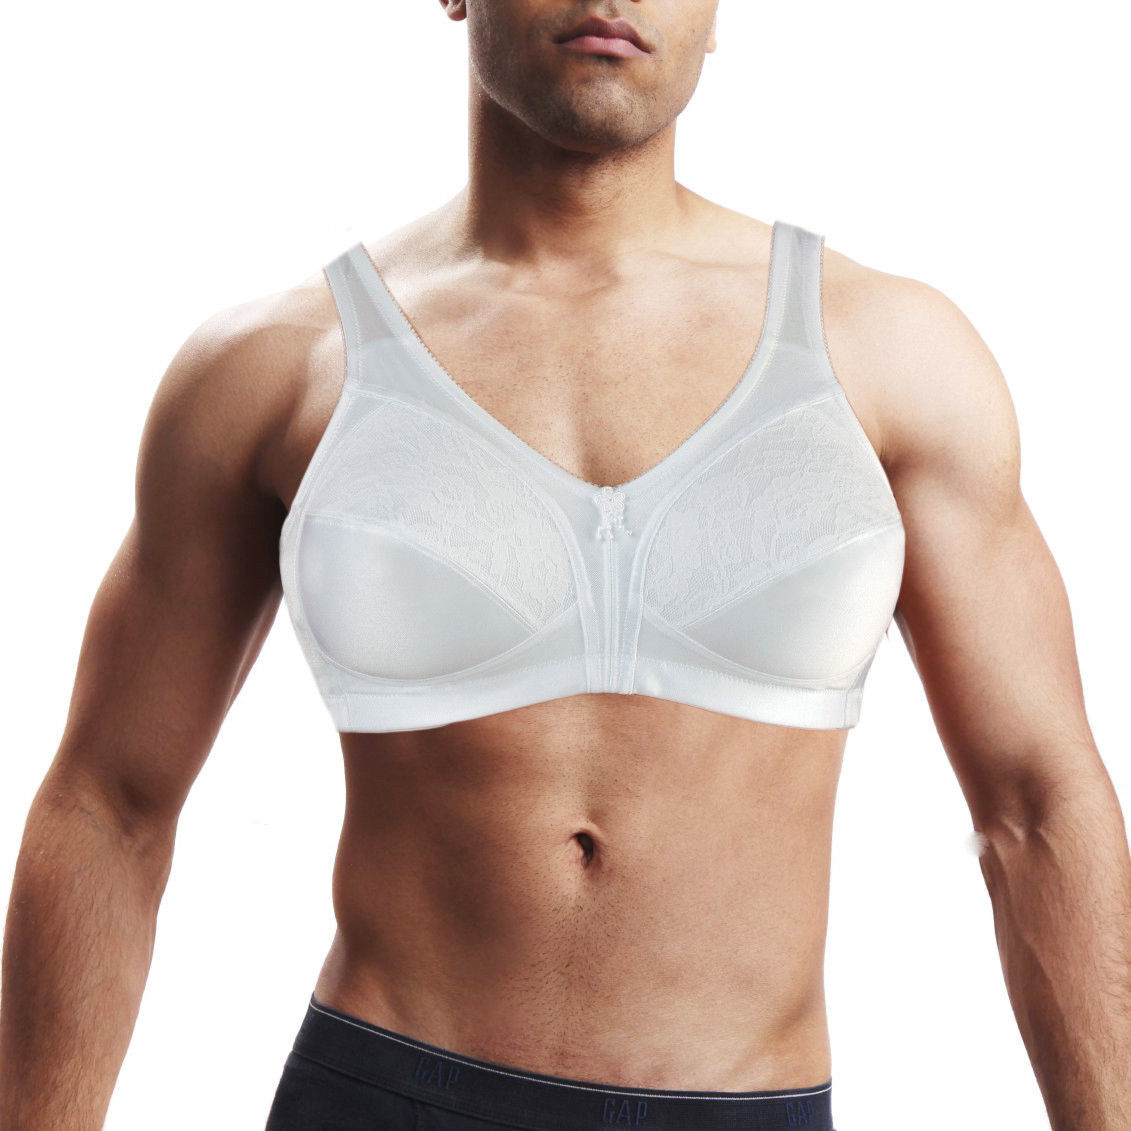 bra-for-men-holds-silicone-breast-forms-crossdressing-transgender